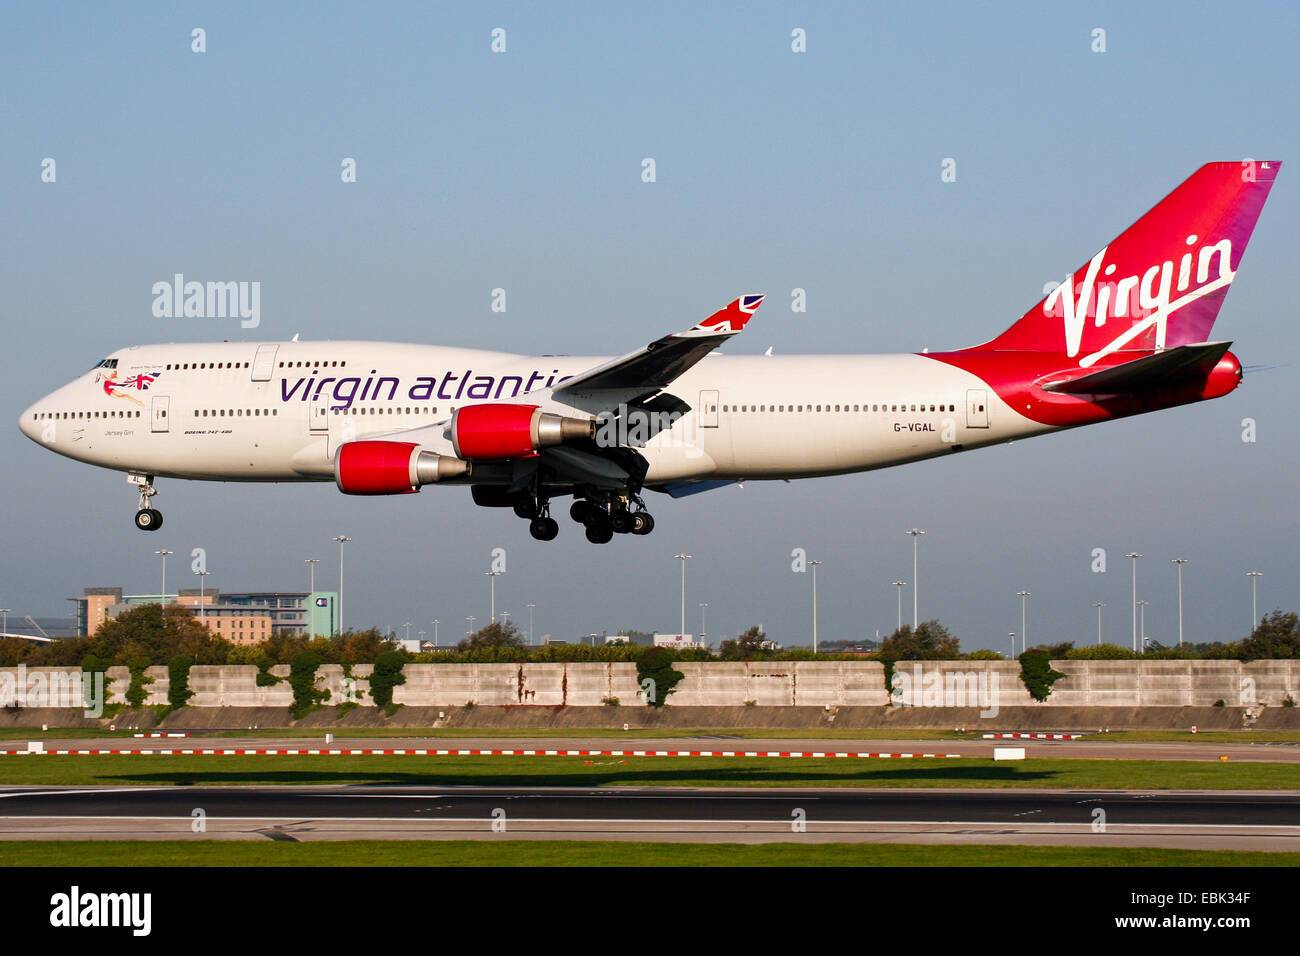 Virgin Atlantic approches Boeing 747-400 de la piste 23R à l'aéroport de Manchester. Banque D'Images